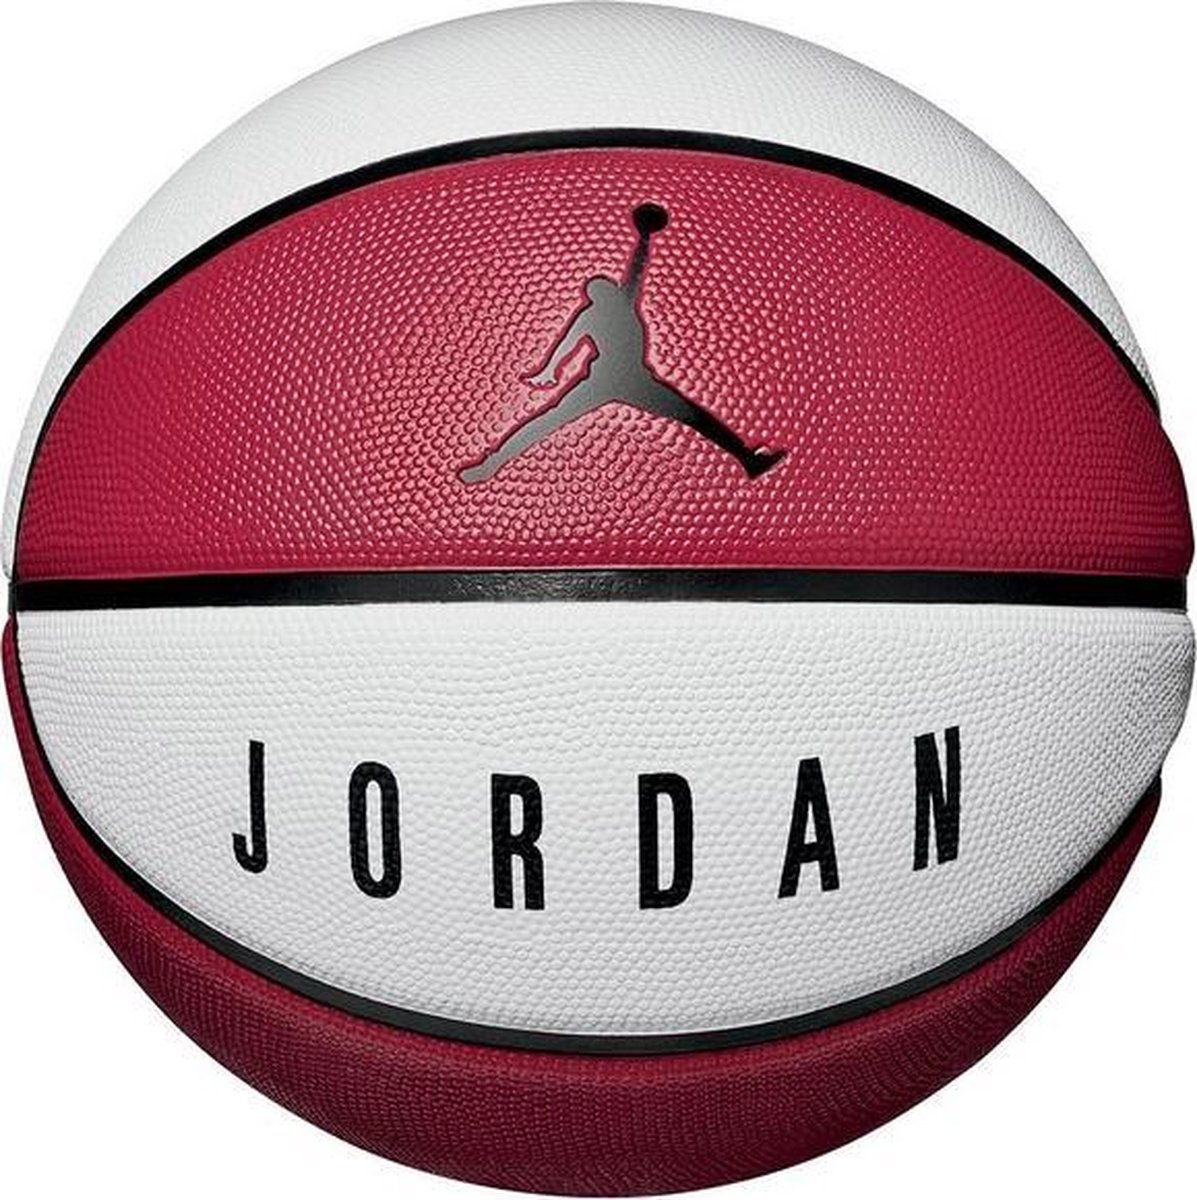 scheuren Compliment functie Nike Basketbal Jordan - Rood/Wit/Zwart | bol.com